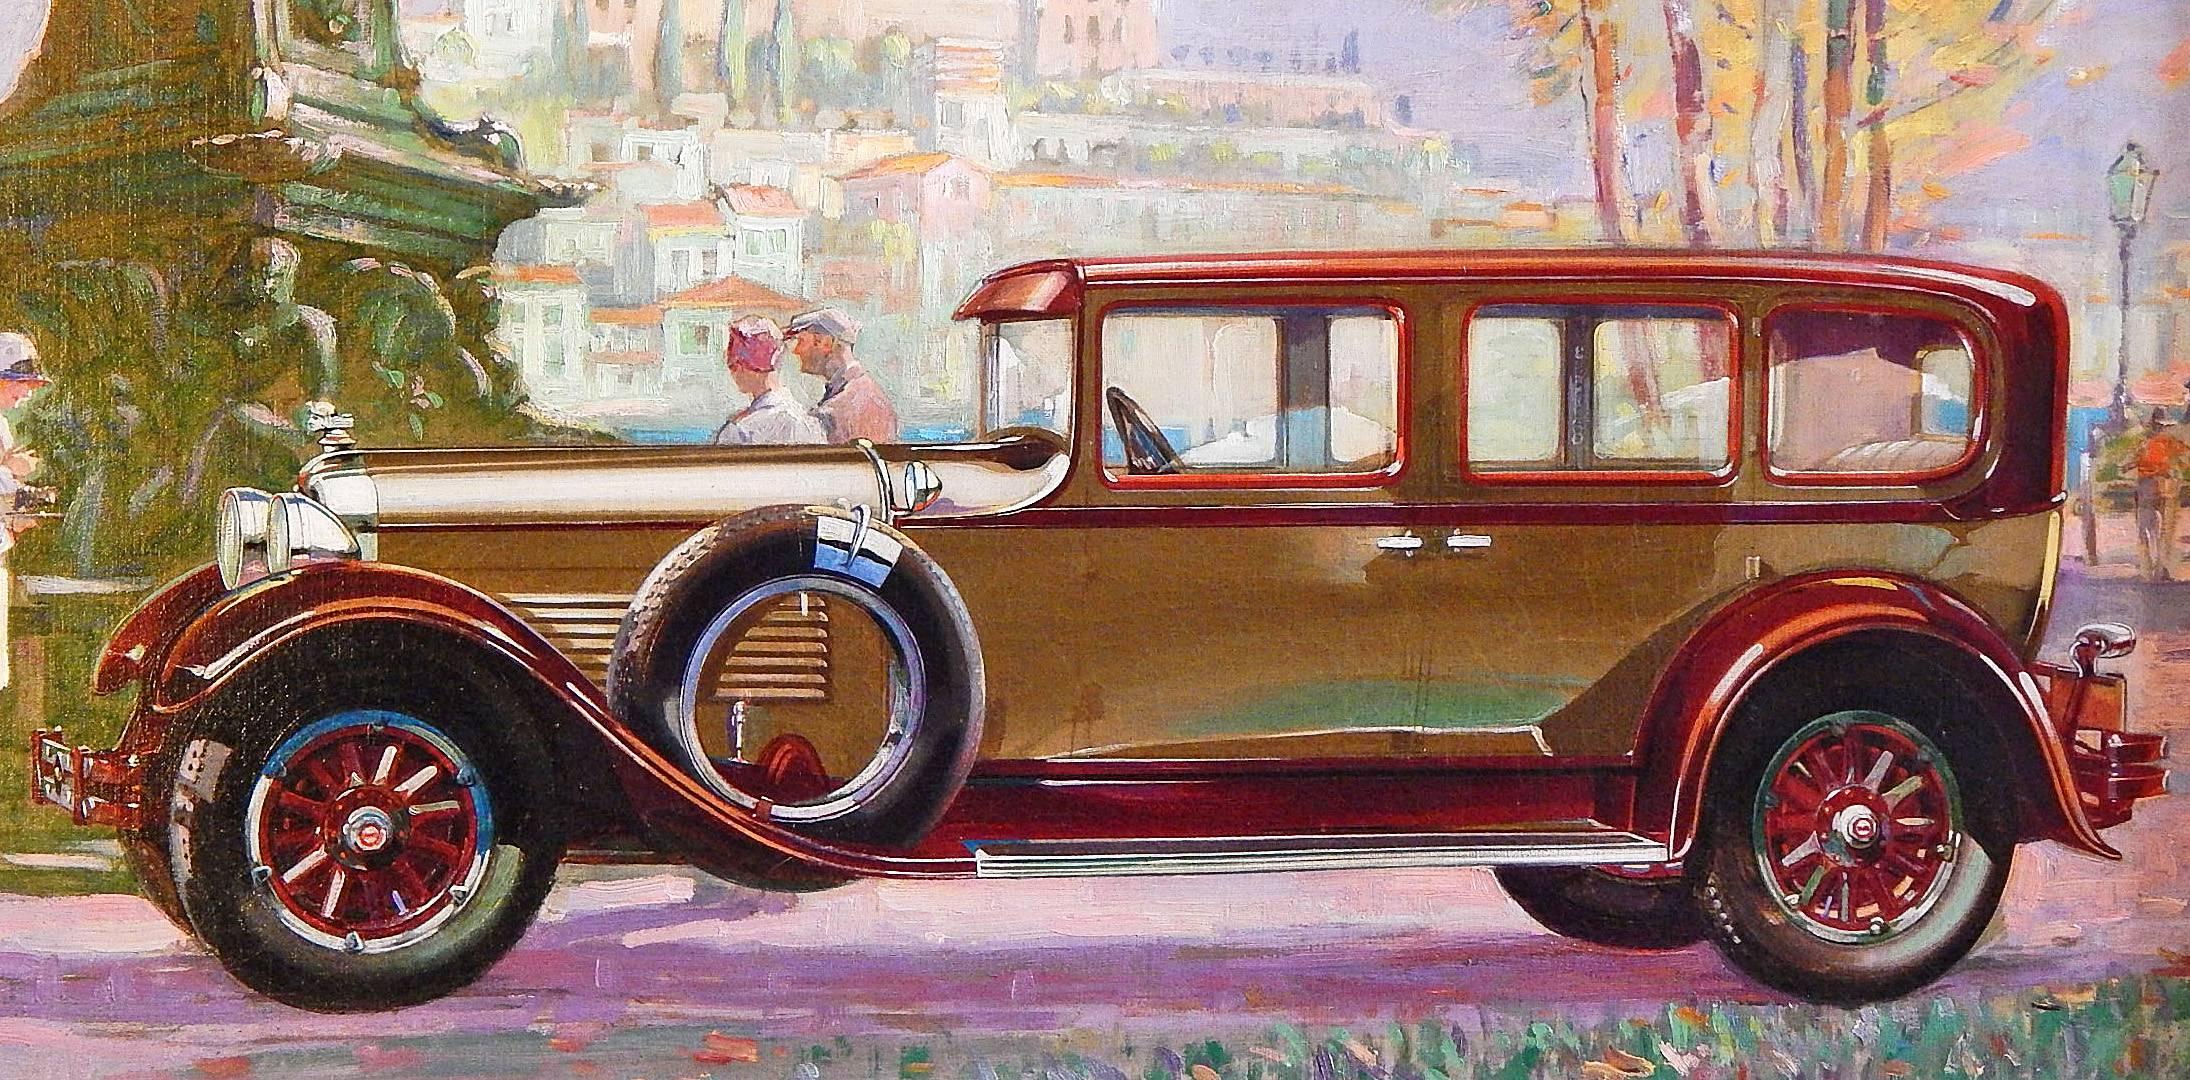 Dieses meisterhaft gemalte, licht- und farbenprächtige Ölgemälde zeigt ein Packard-Automobil aus dem Jahr 1928, den Höhepunkt des Art-déco-Stils und der Eleganz gegen Ende der Depression, am Rande eines Parks mit einer monumentalen Bronzeskulptur im